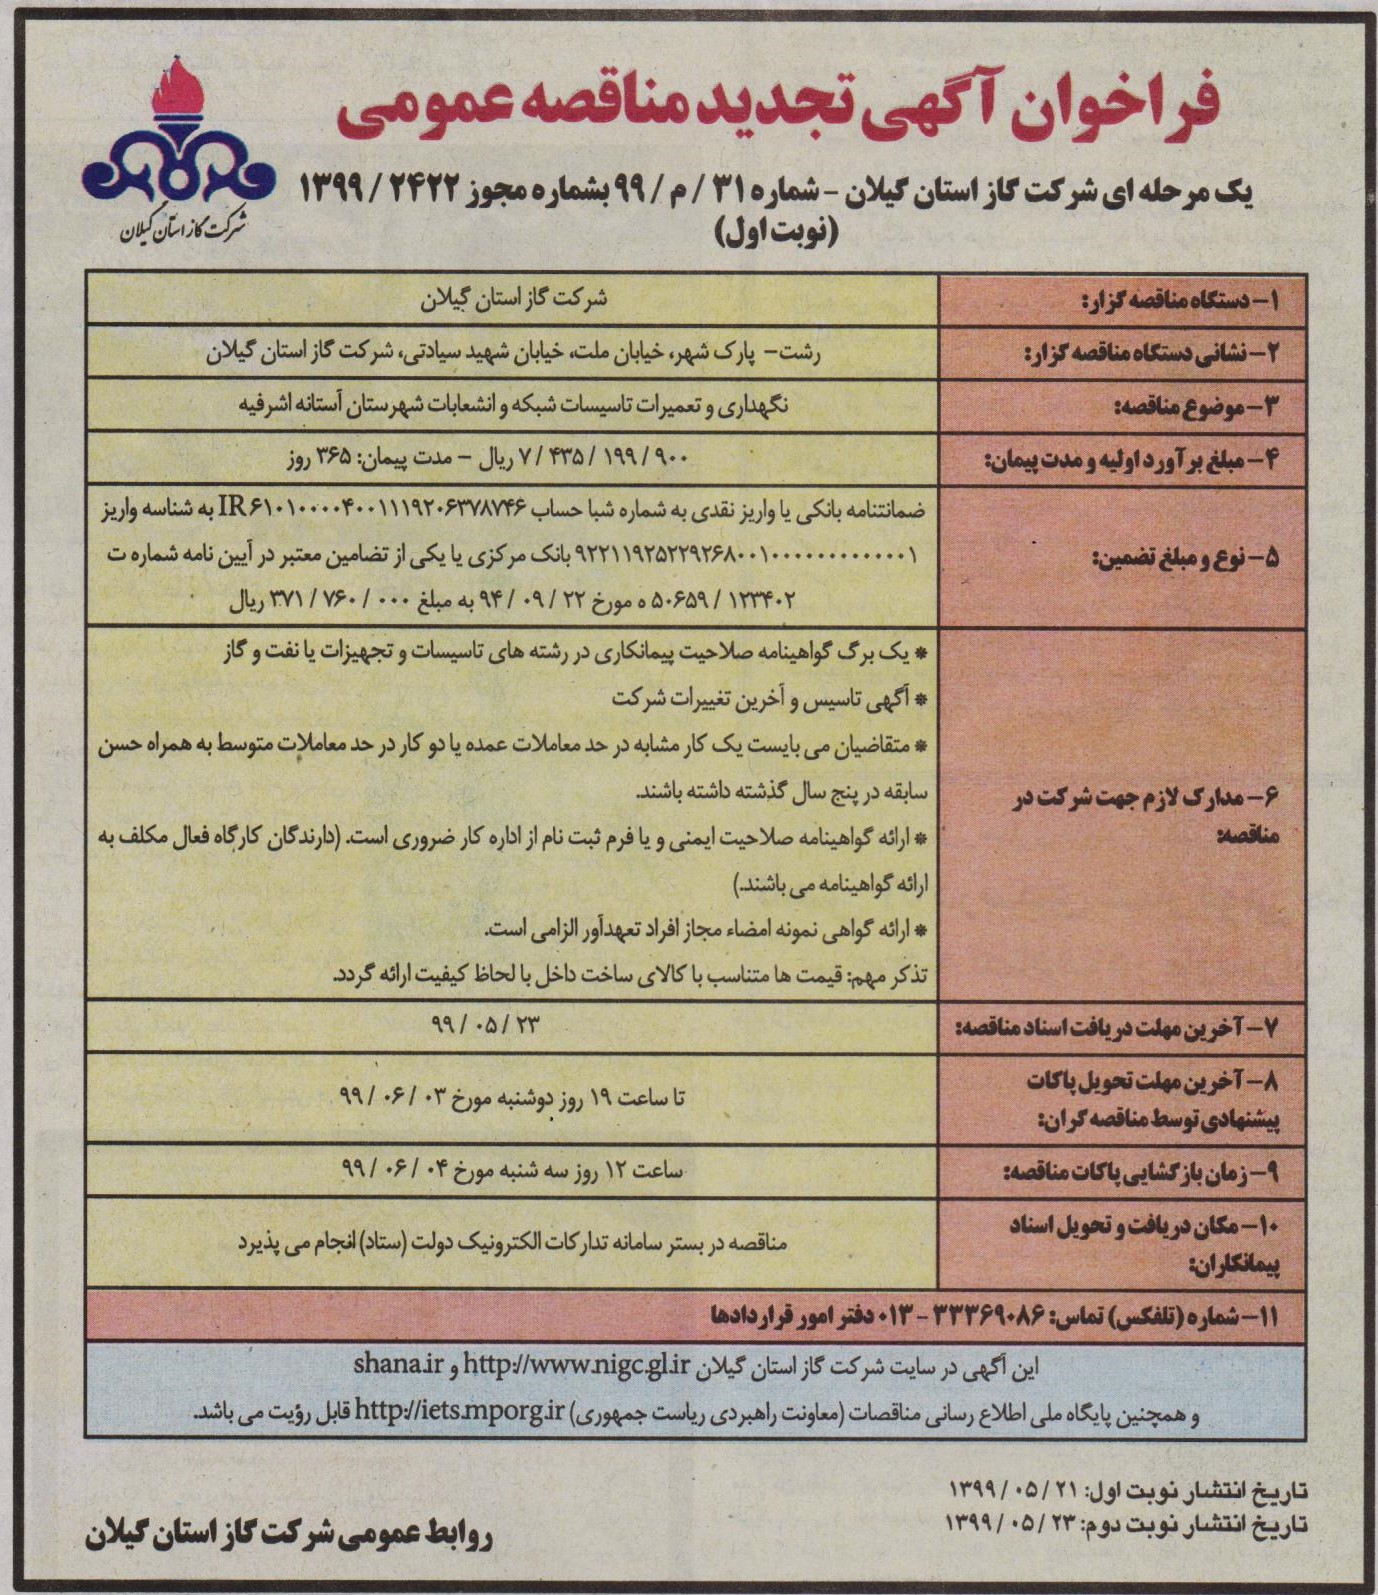 نگهداری و تعمیرات تاسیسات شبکه و انشعابات شهرستان آستانه اشرفیه - 23 مرداد